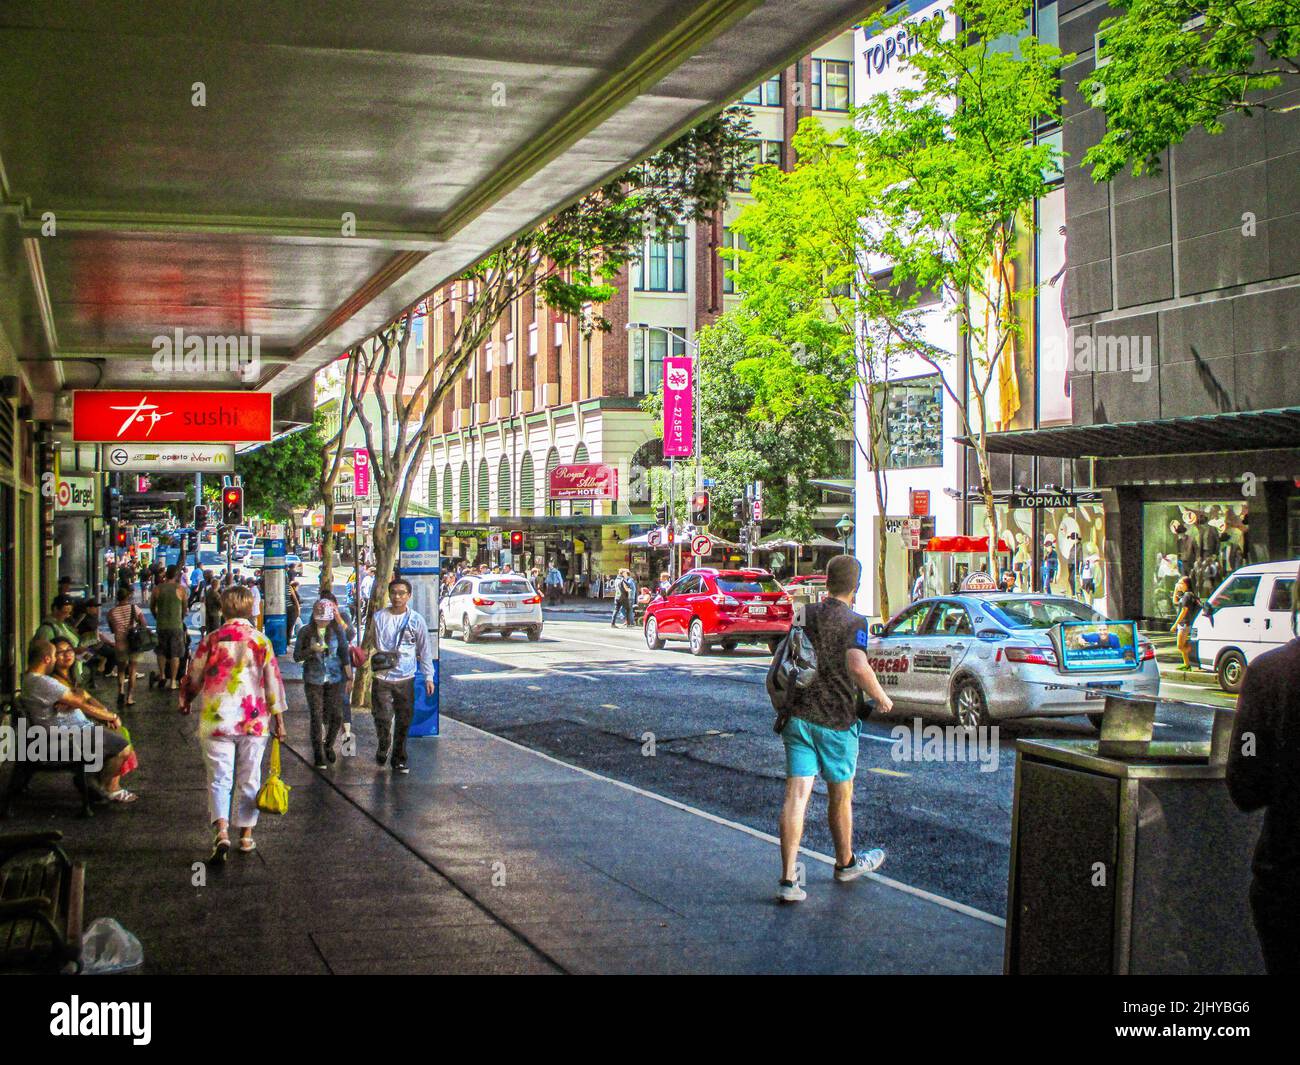 08-14 2014 Brisbane Australien belebte, farbenfrohe Straßen in der Innenstadt von CBD mit Menschen, die auf Gehwegen spazieren Stockfoto